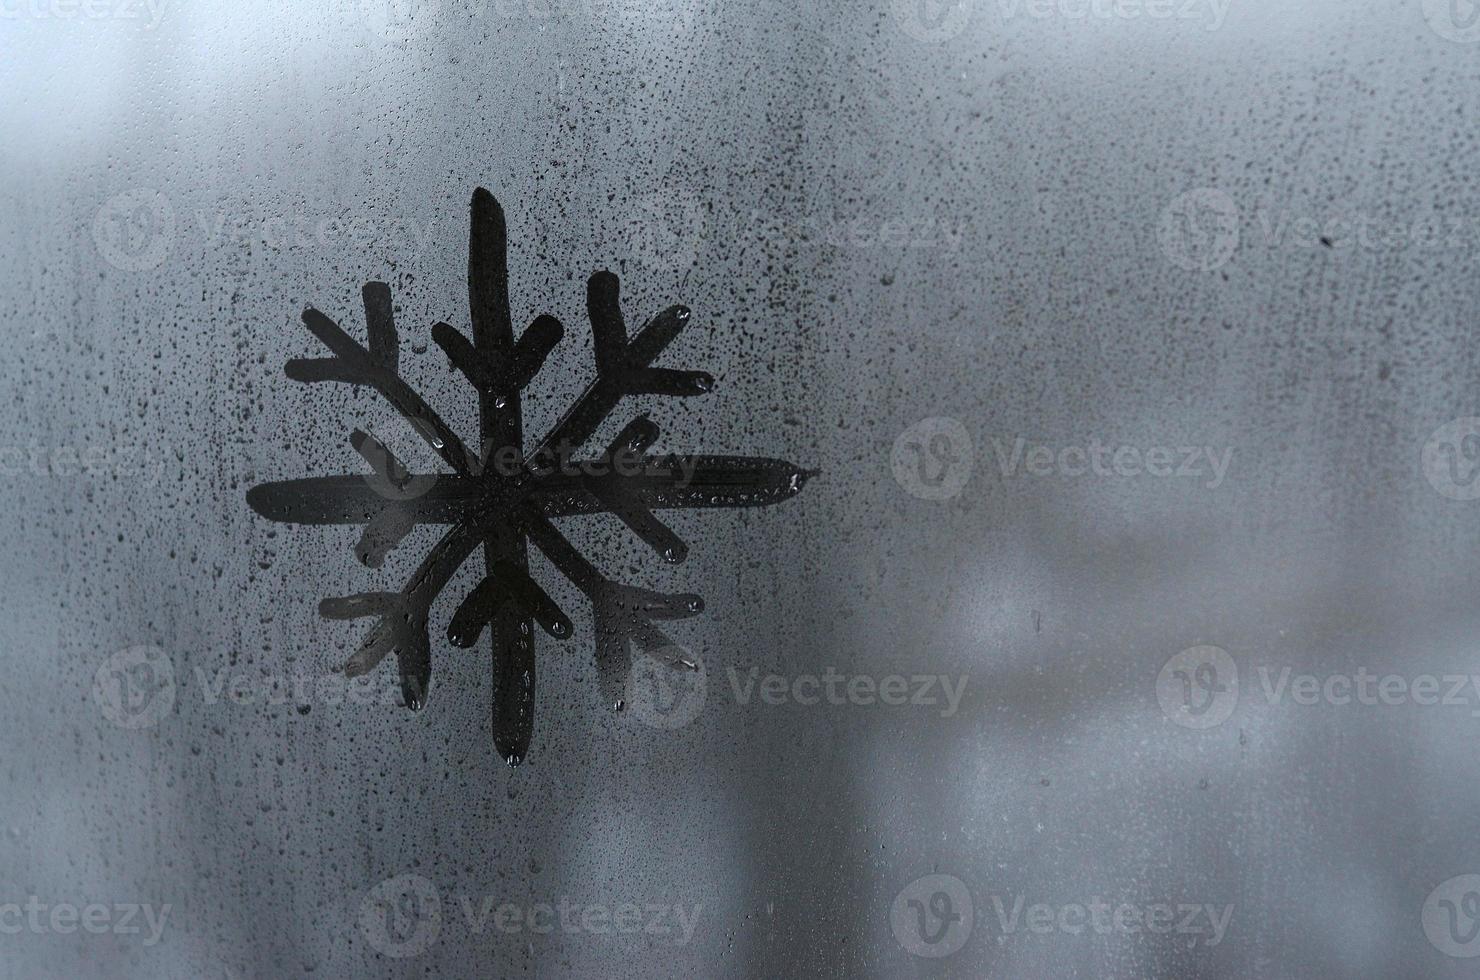 de beeld van de sneeuwvlok is getrokken met een vinger Aan de oppervlakte van een beneveld glas venster. ijzig weer foto